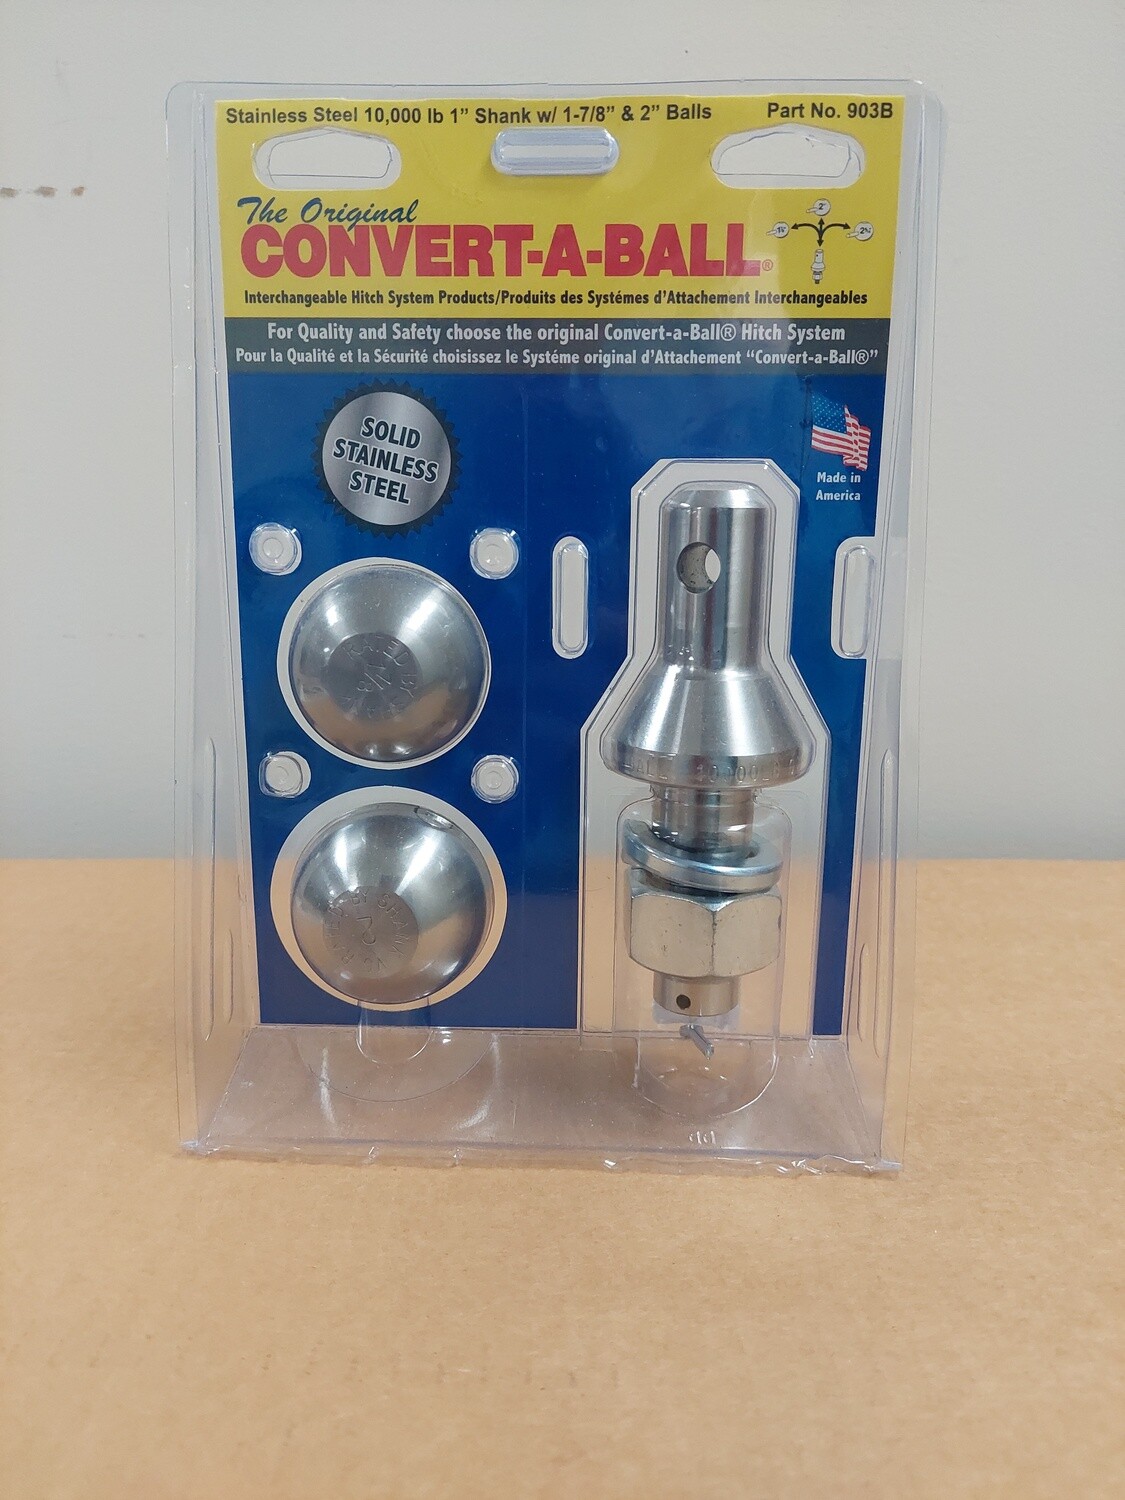 Convert-A-Ball 1" Shank w/ 1-7/8" & 2" Balls